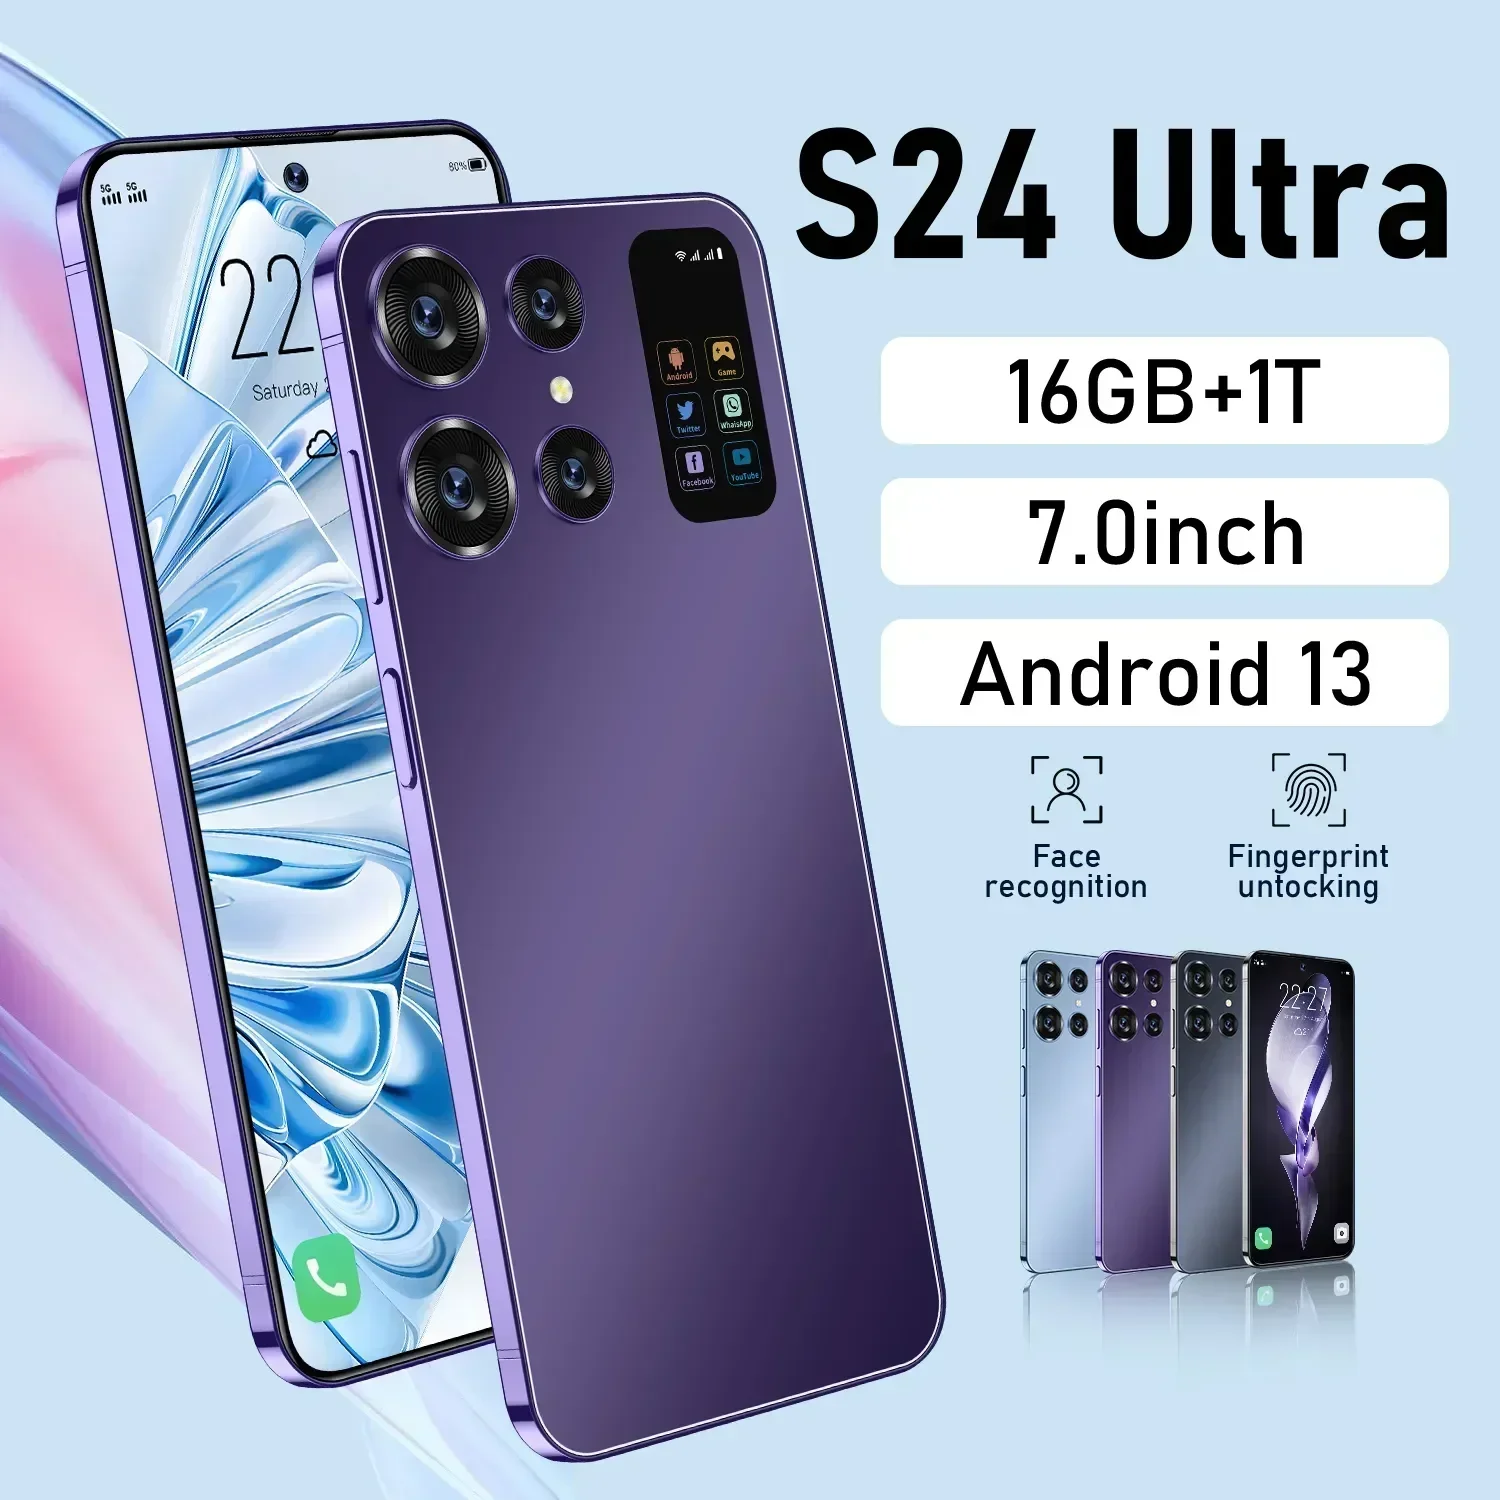 

Новый смартфон s24 ultra 5g, 7,0 дюйма, 72 МП, 4G, 7000 мАч, 16 ГБ + 1 ТБ, сотовые телефоны с HD-камерой, разблокированные мобильные телефоны Android 13